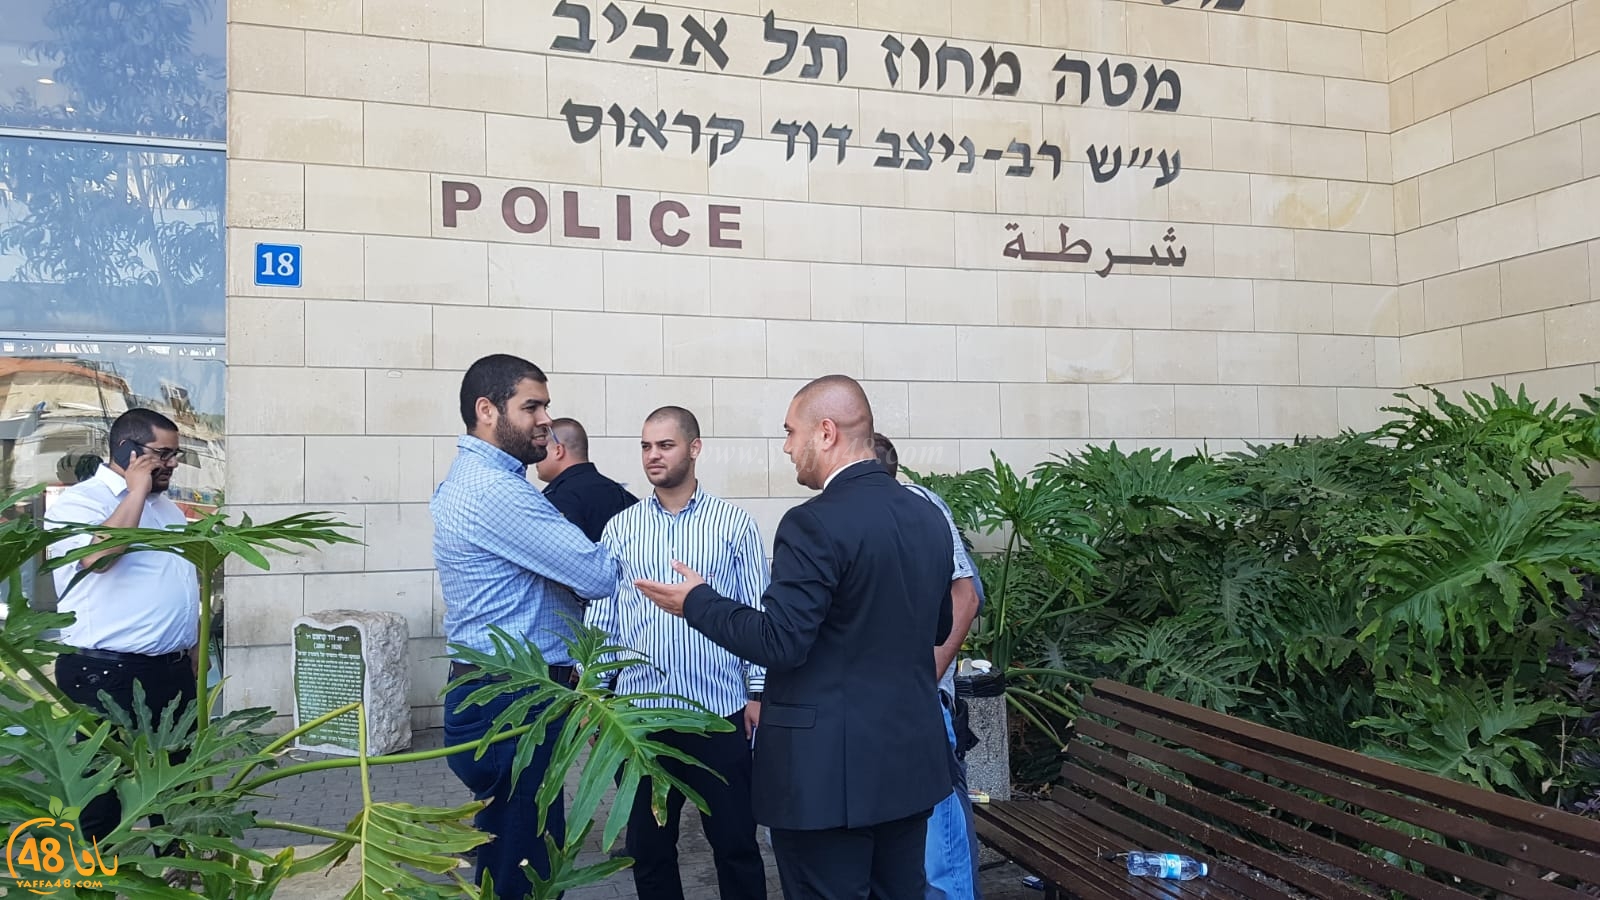 يافا: تشكيل طاقم من المحاميين للدفاع عن المعتقلين واعتقال السيد ابراهيم نجار